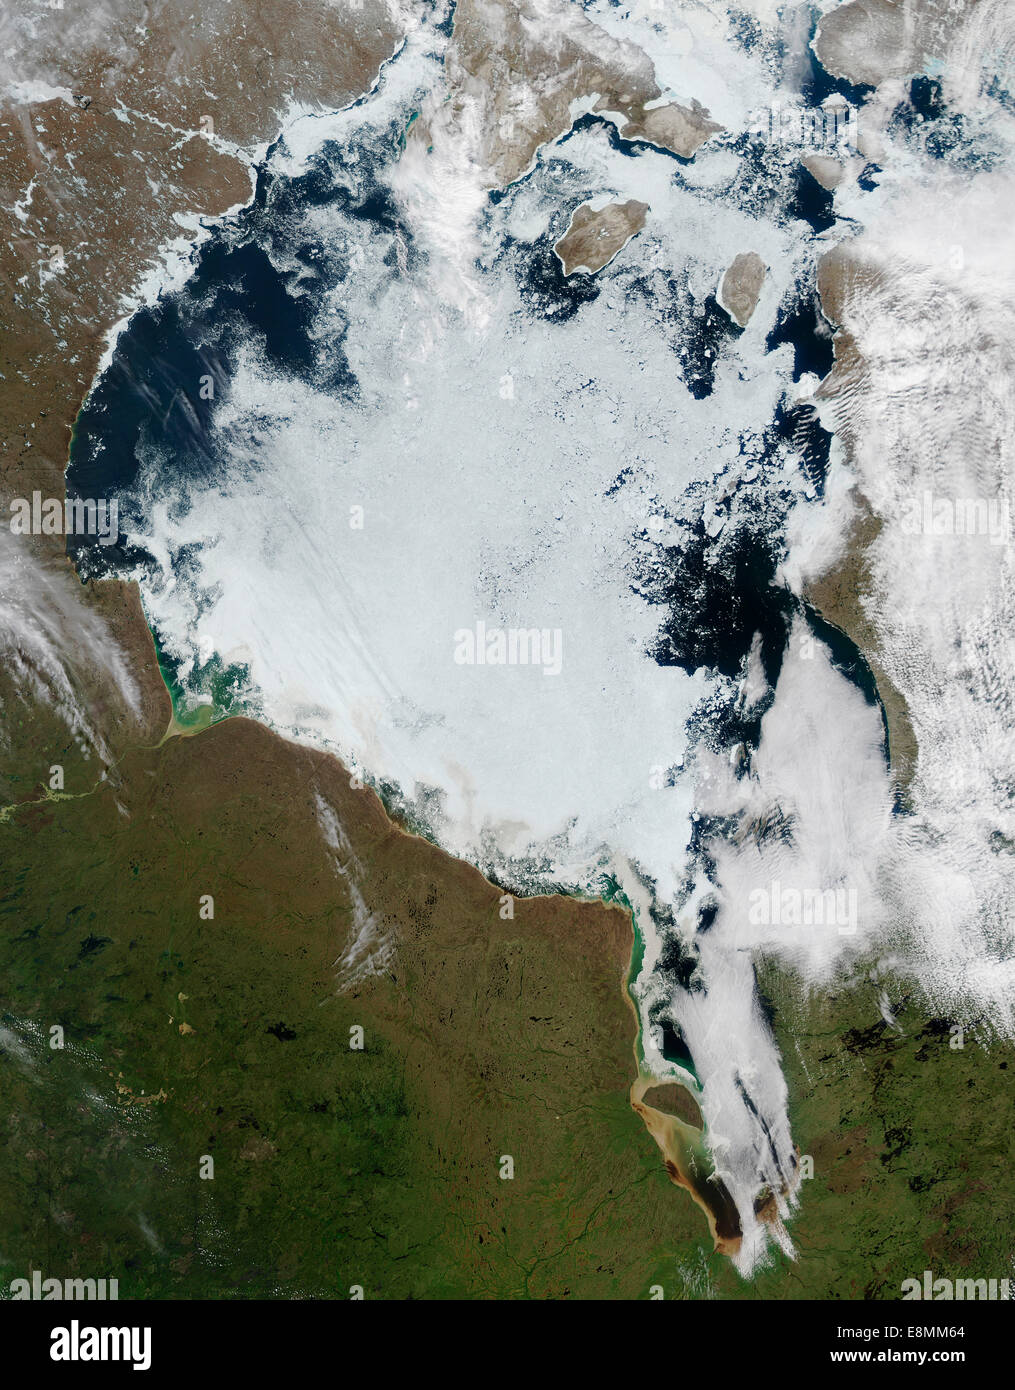 18 juin 2014 - Vue de glace jusqu'à la baie d'Hudson. La glace de mer est blanche, l'eau est bleu foncé. Banque D'Images